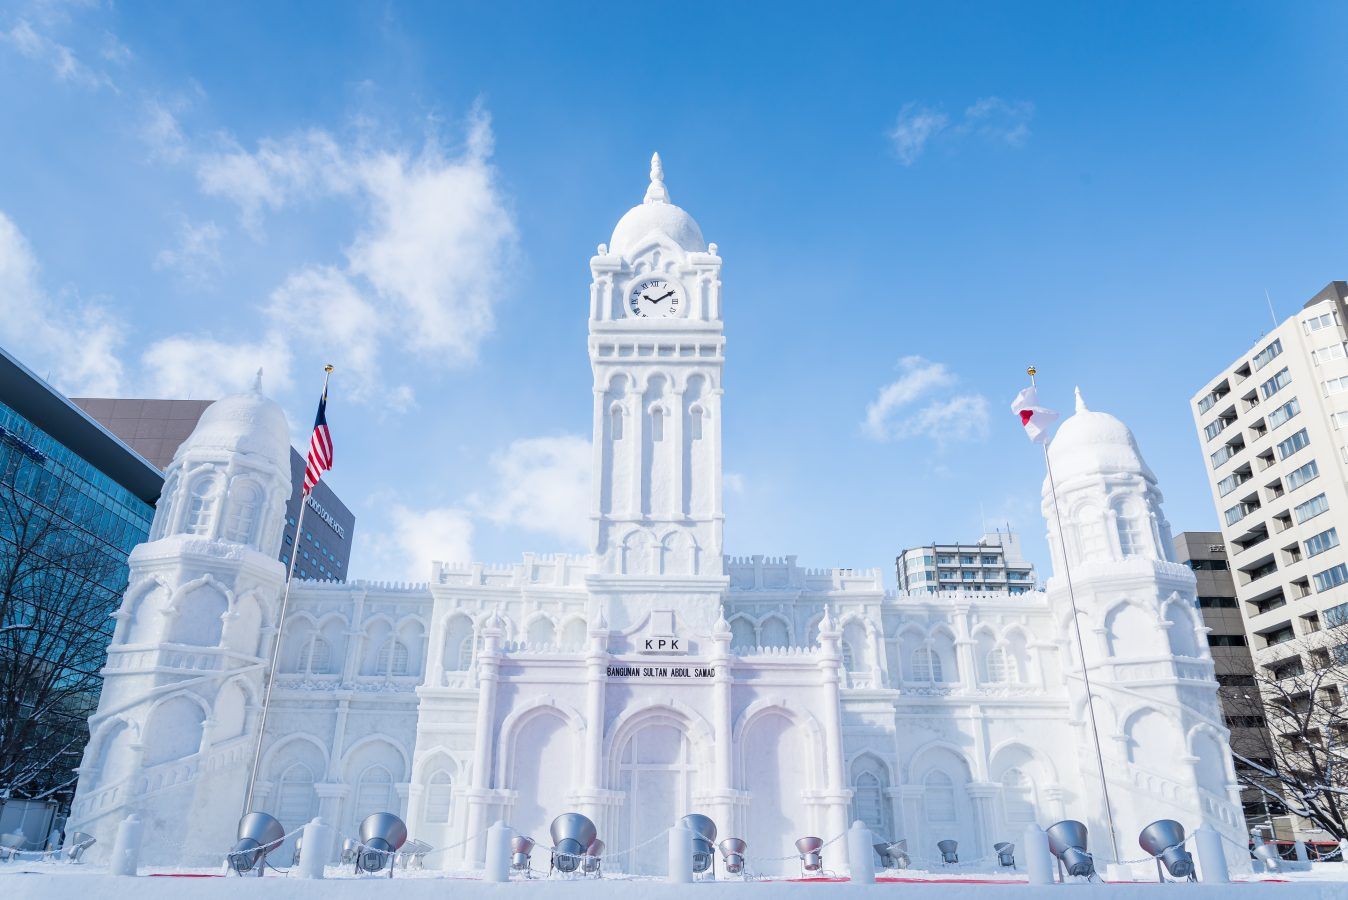 Sapporo Snow Festival 2023 เทศกาลหิมะ งานประกวดแกะสลักหิมะระดับโลก